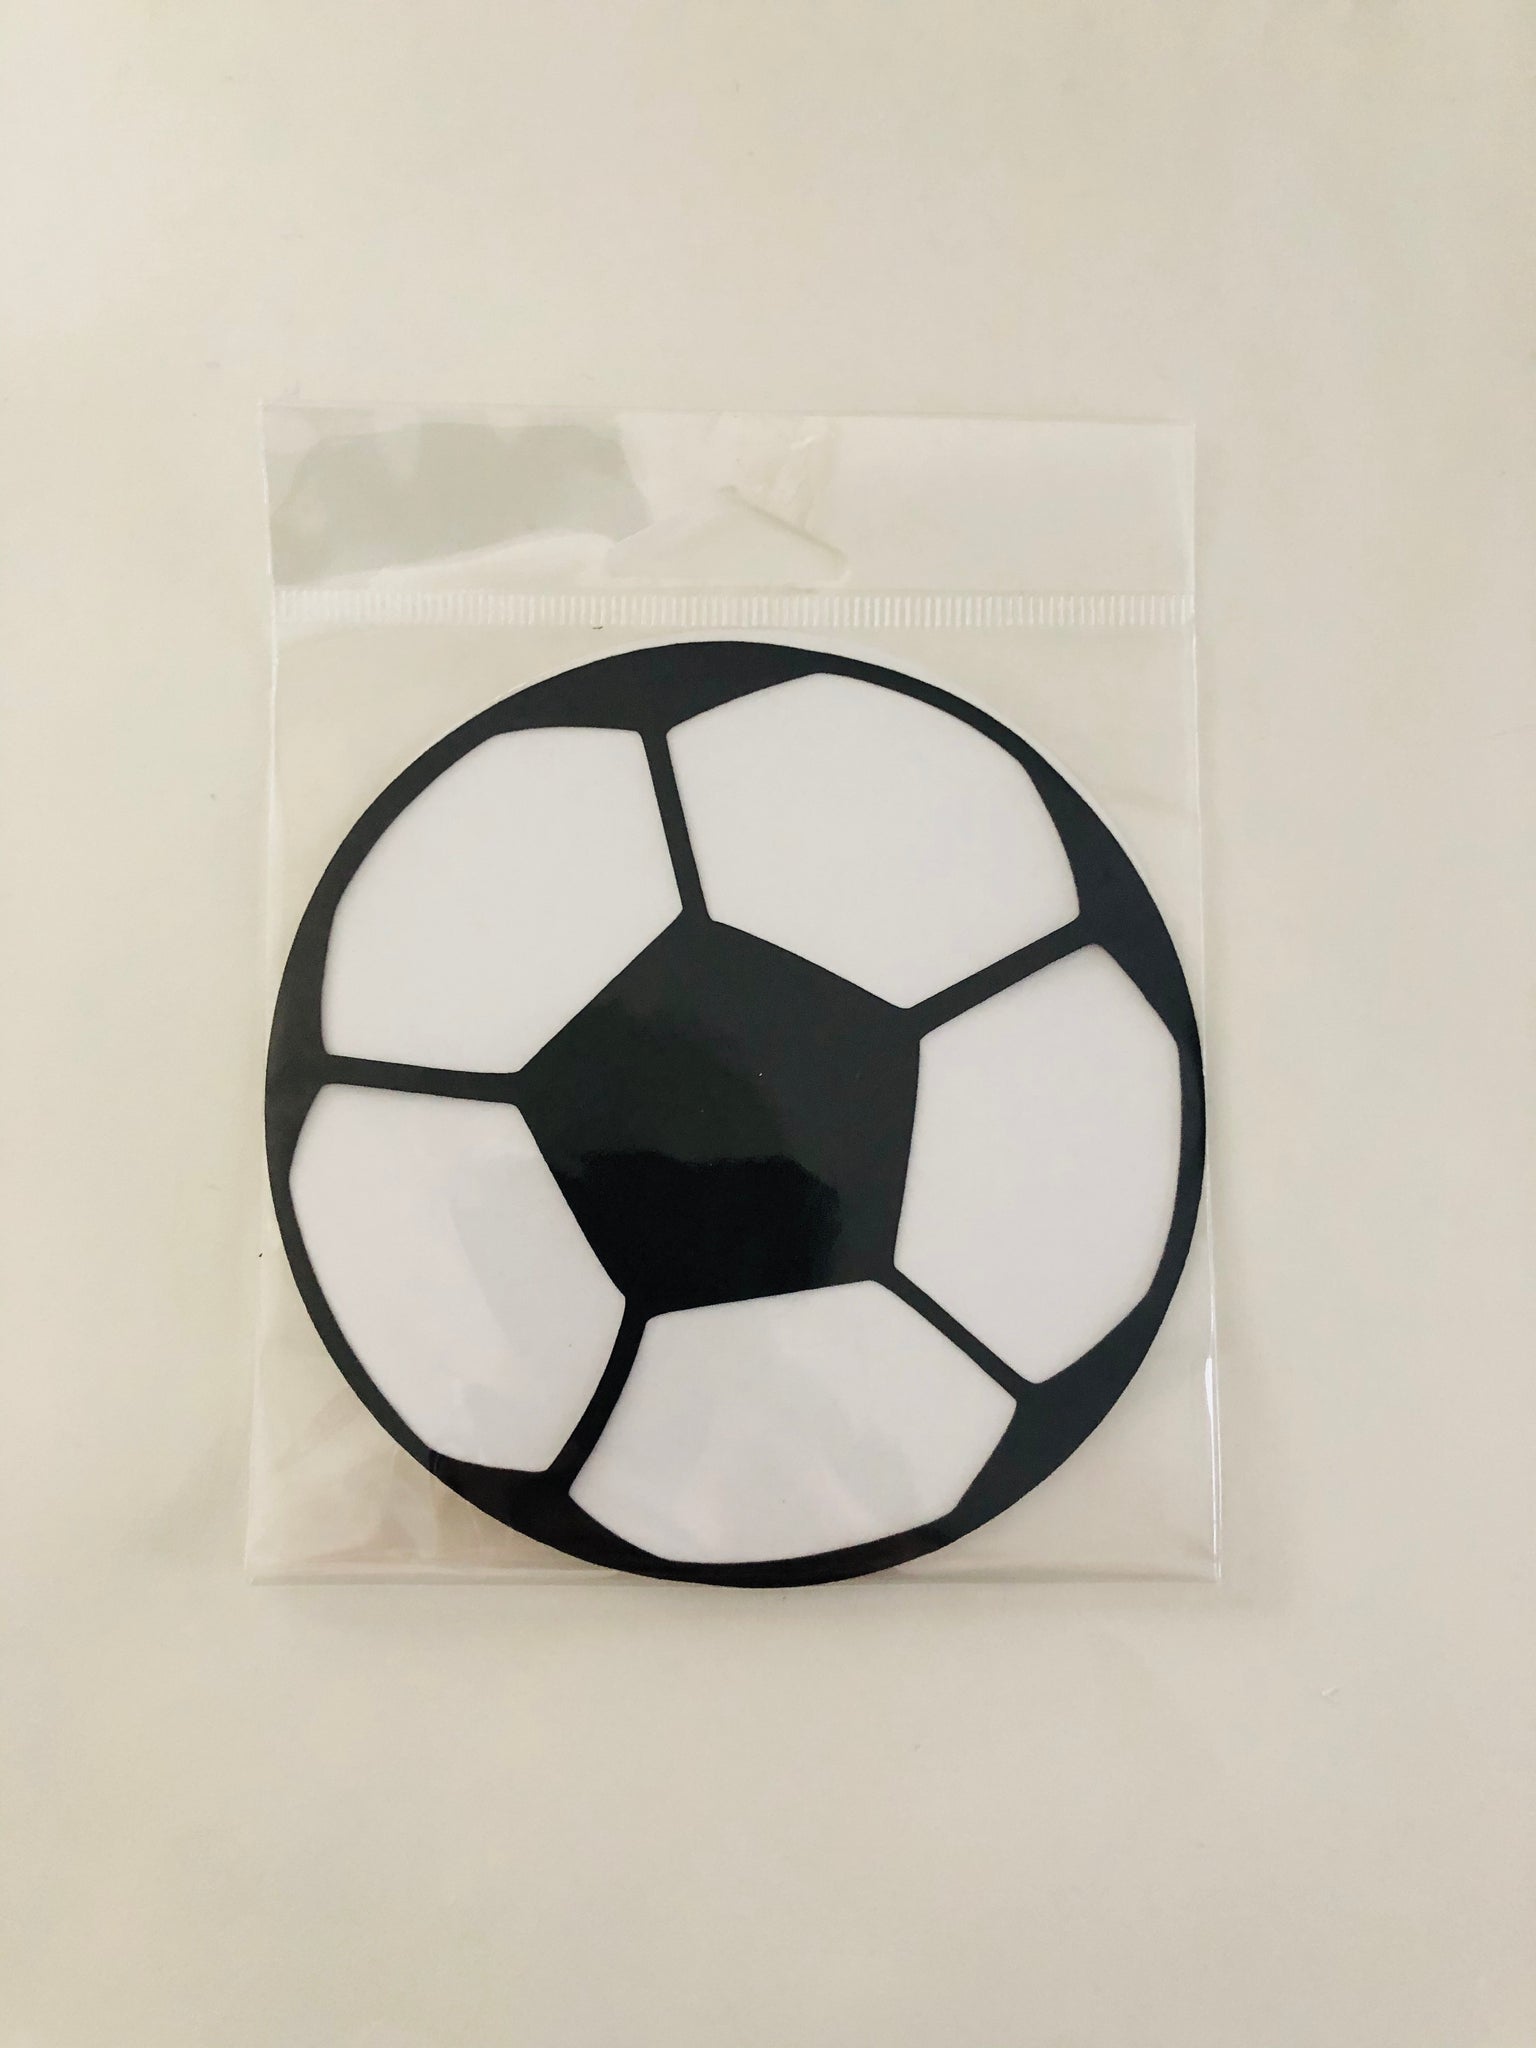 Soccer Ball Diecut 4.25"